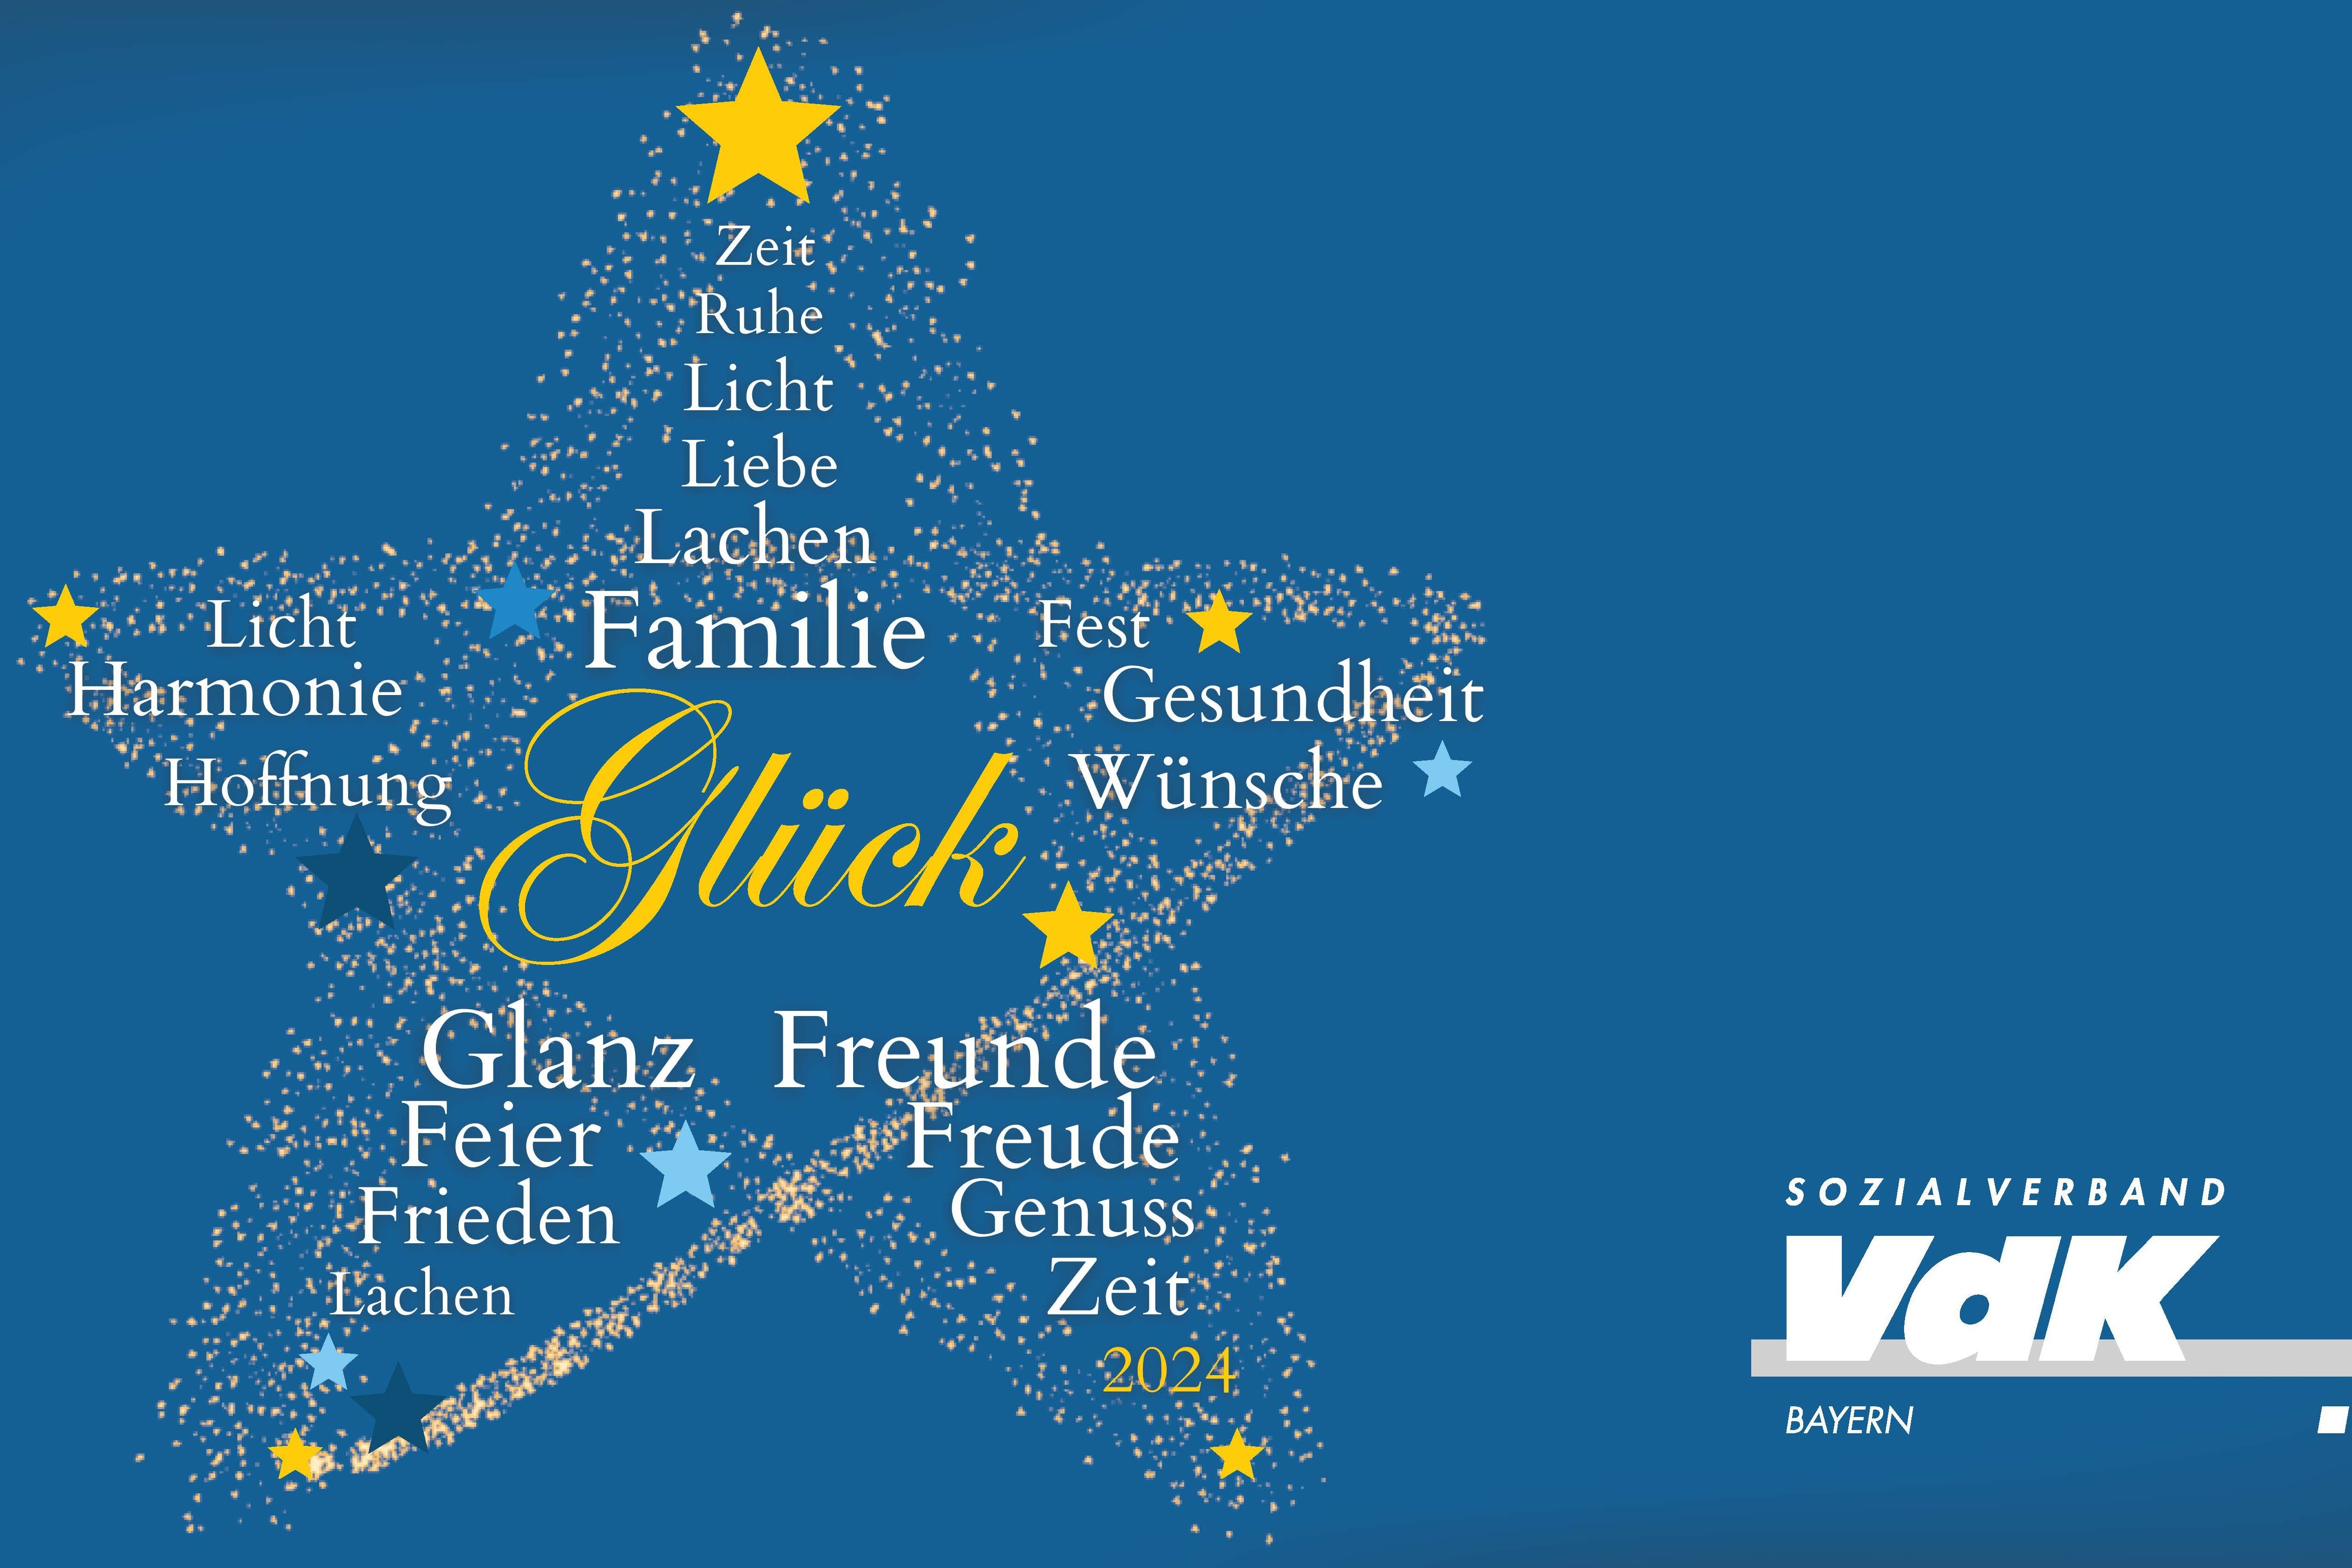 Auf dem Foto sieht man einen Stern mit verschiedenen Wünschen. Rechts unten in der Ecke ist das Logo des VdK Bayern zu sehen.